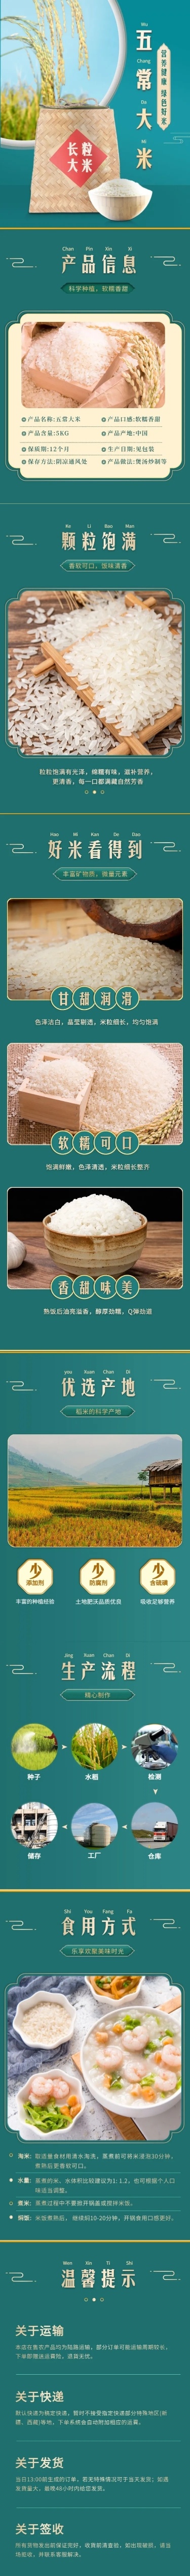 创意常规食品生鲜大米详情页